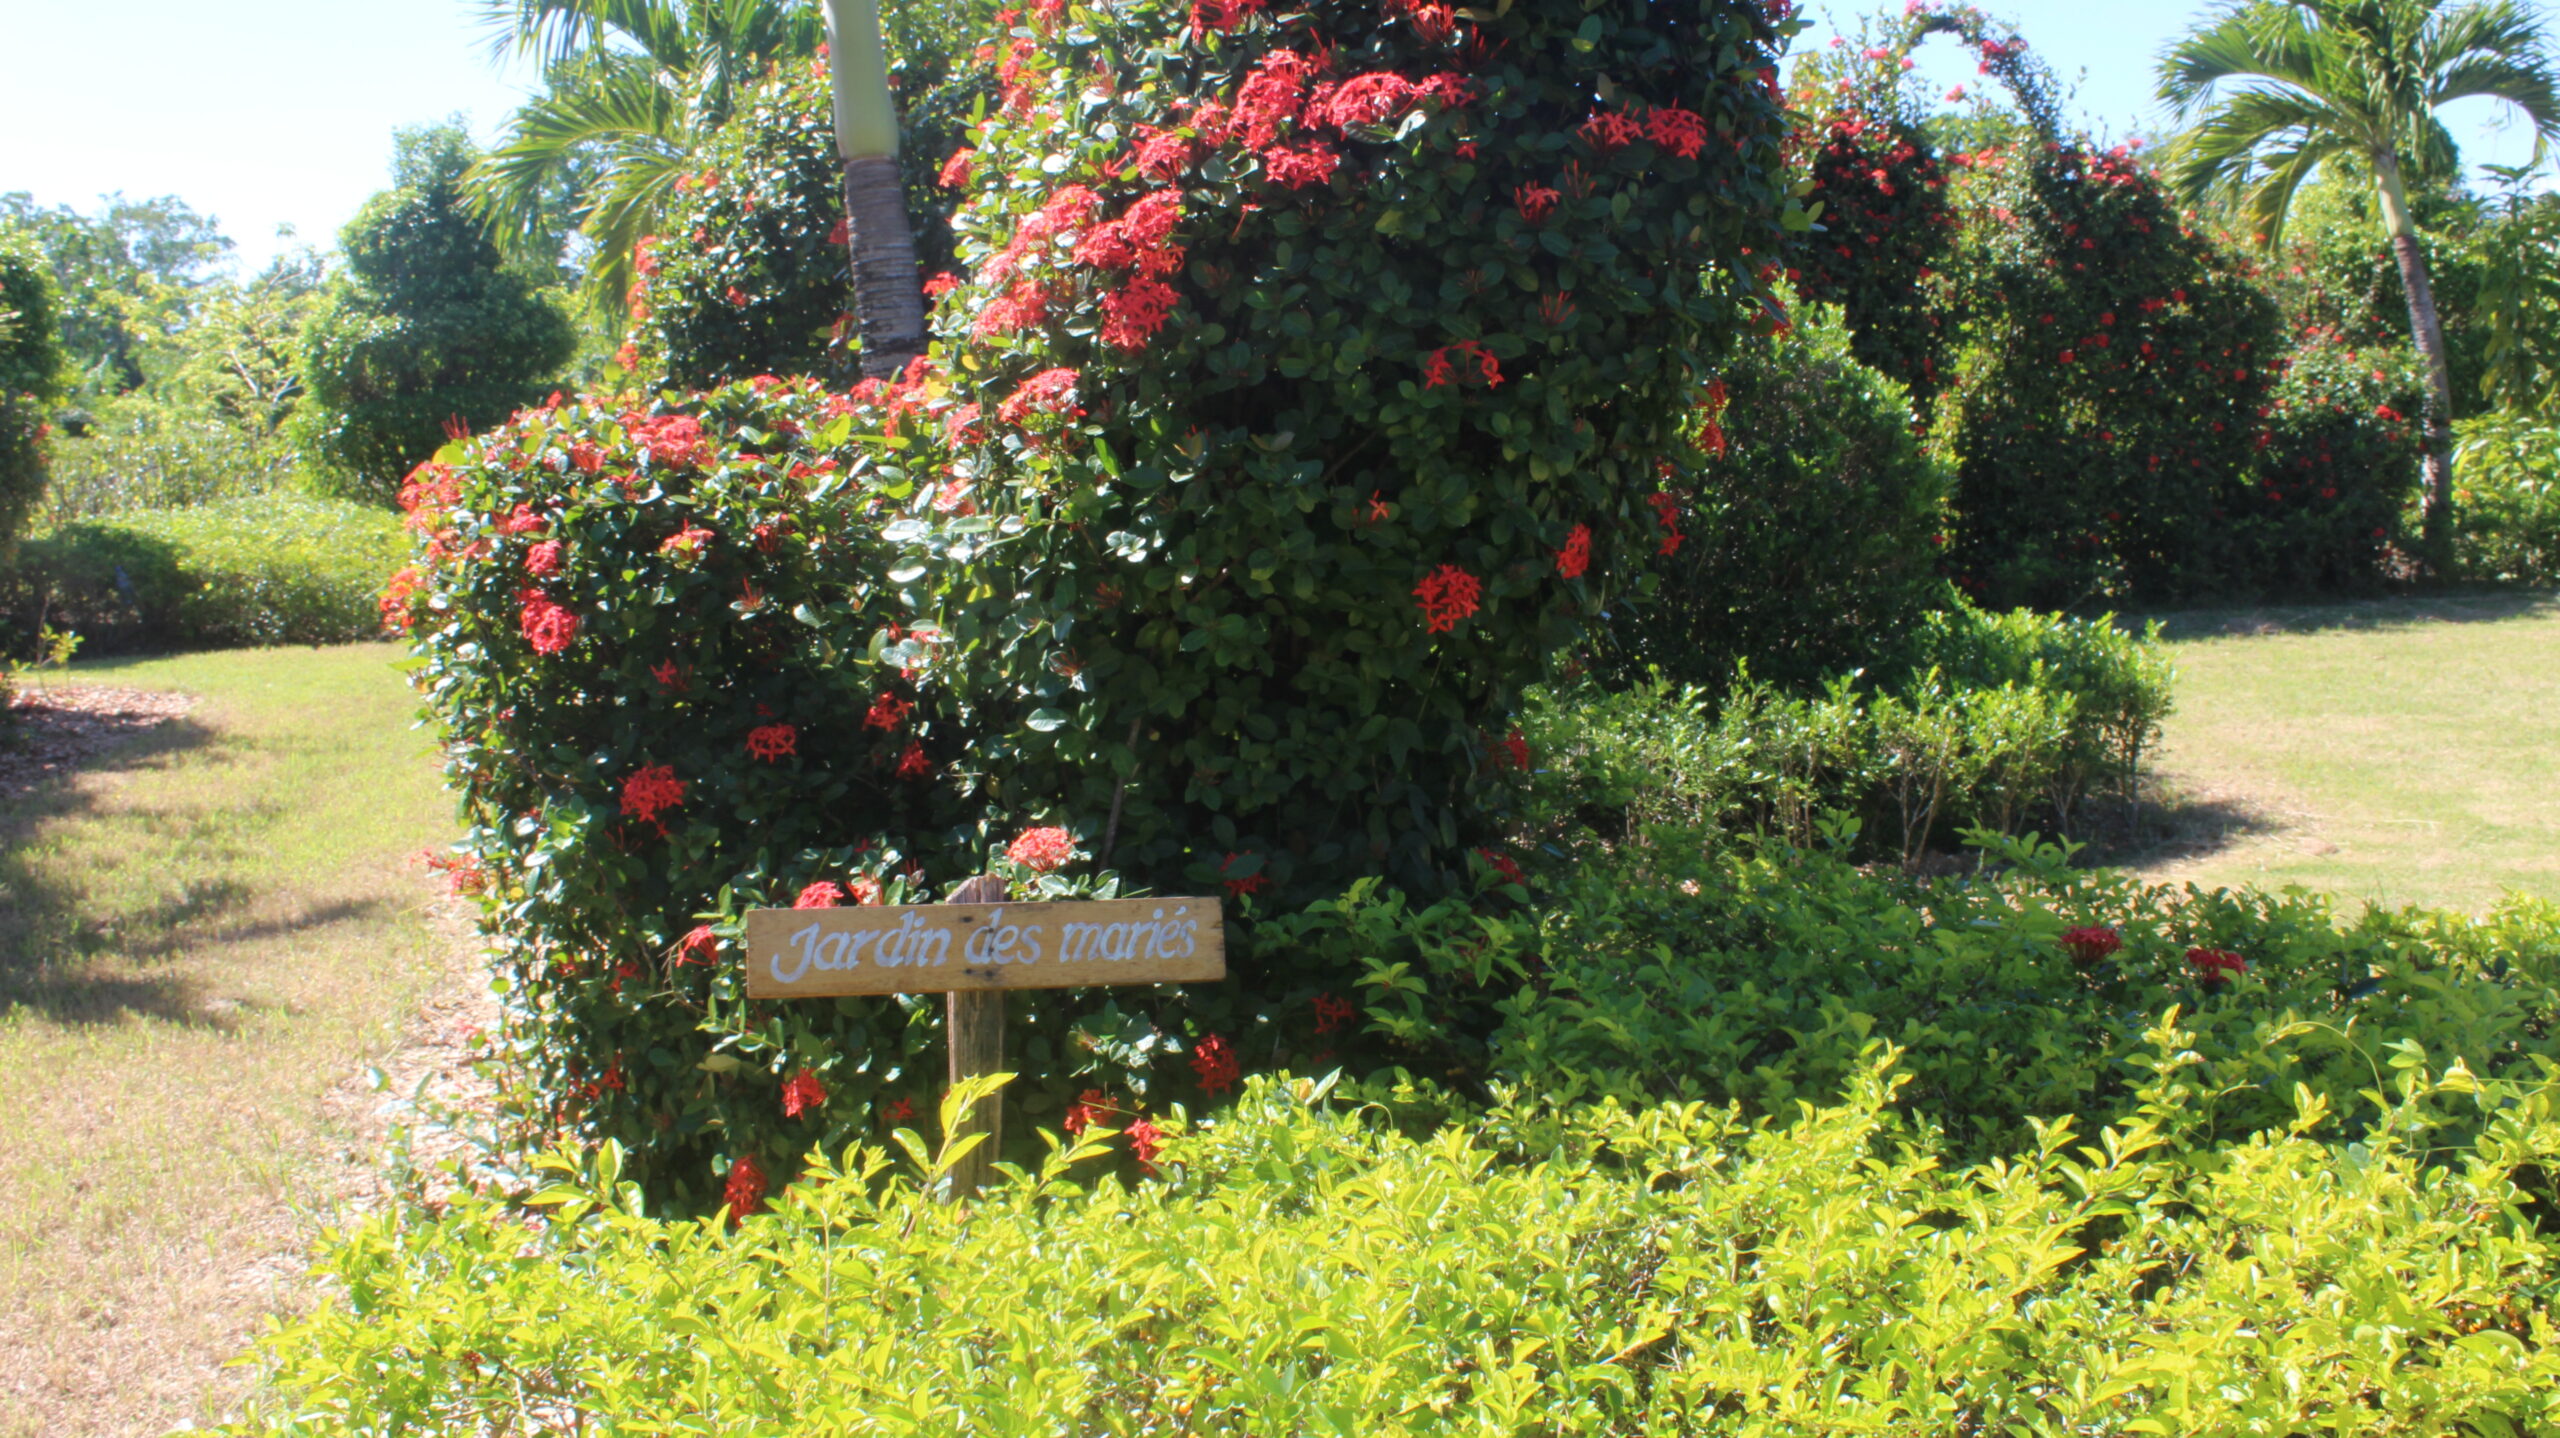 Le Jardin botanique des Cayes maintient ses activités malgré la crise sociopolitique